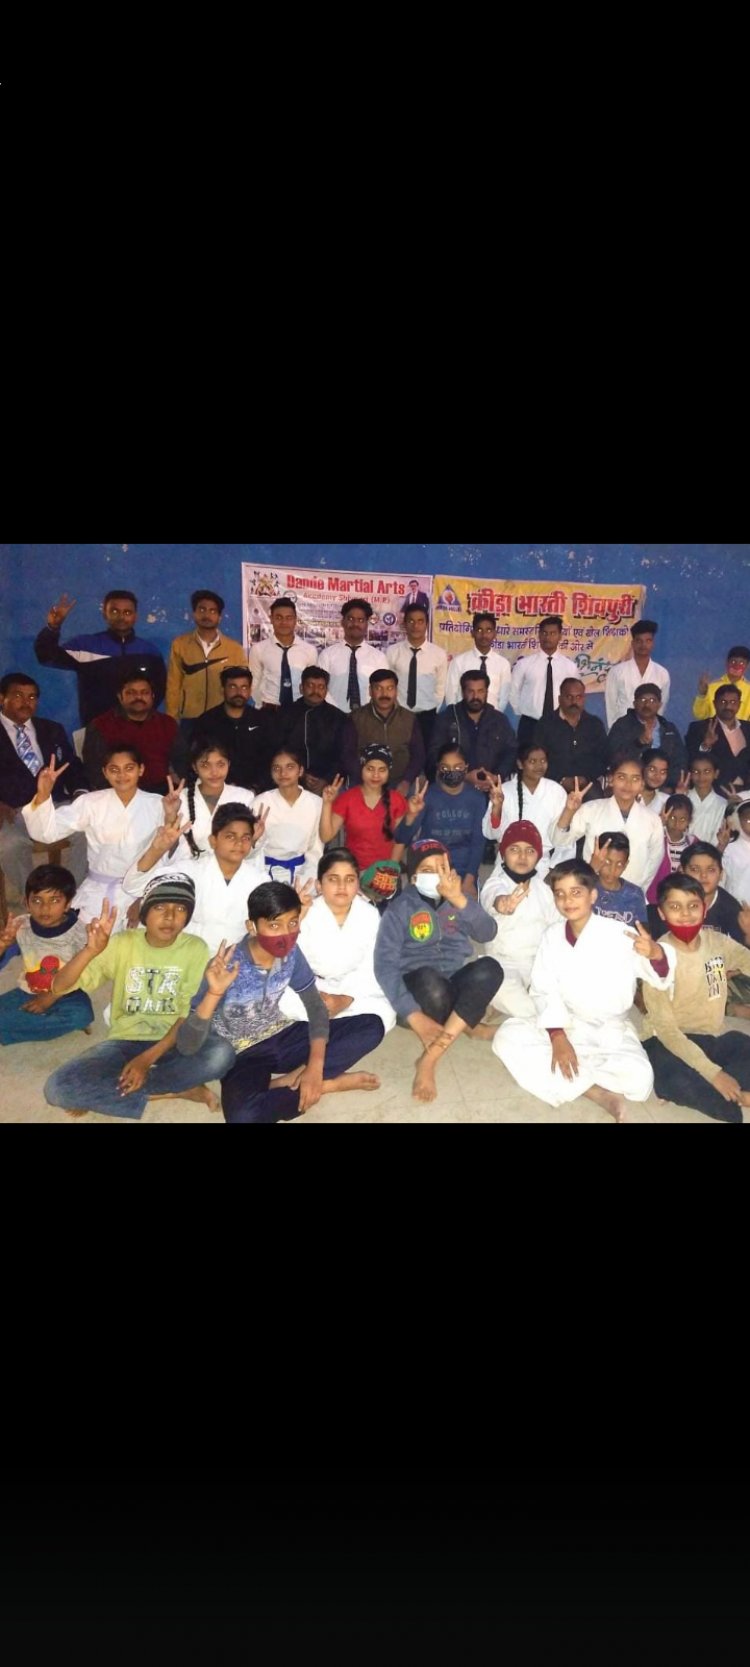 शिवपुरी मे कराते प्रतियोगिता का आयोजन किया गया जिसमें मार्शल आर्ट्स अकादमी के महासचिव हितेंद्र सिंह डंडे सम्मिल हुए